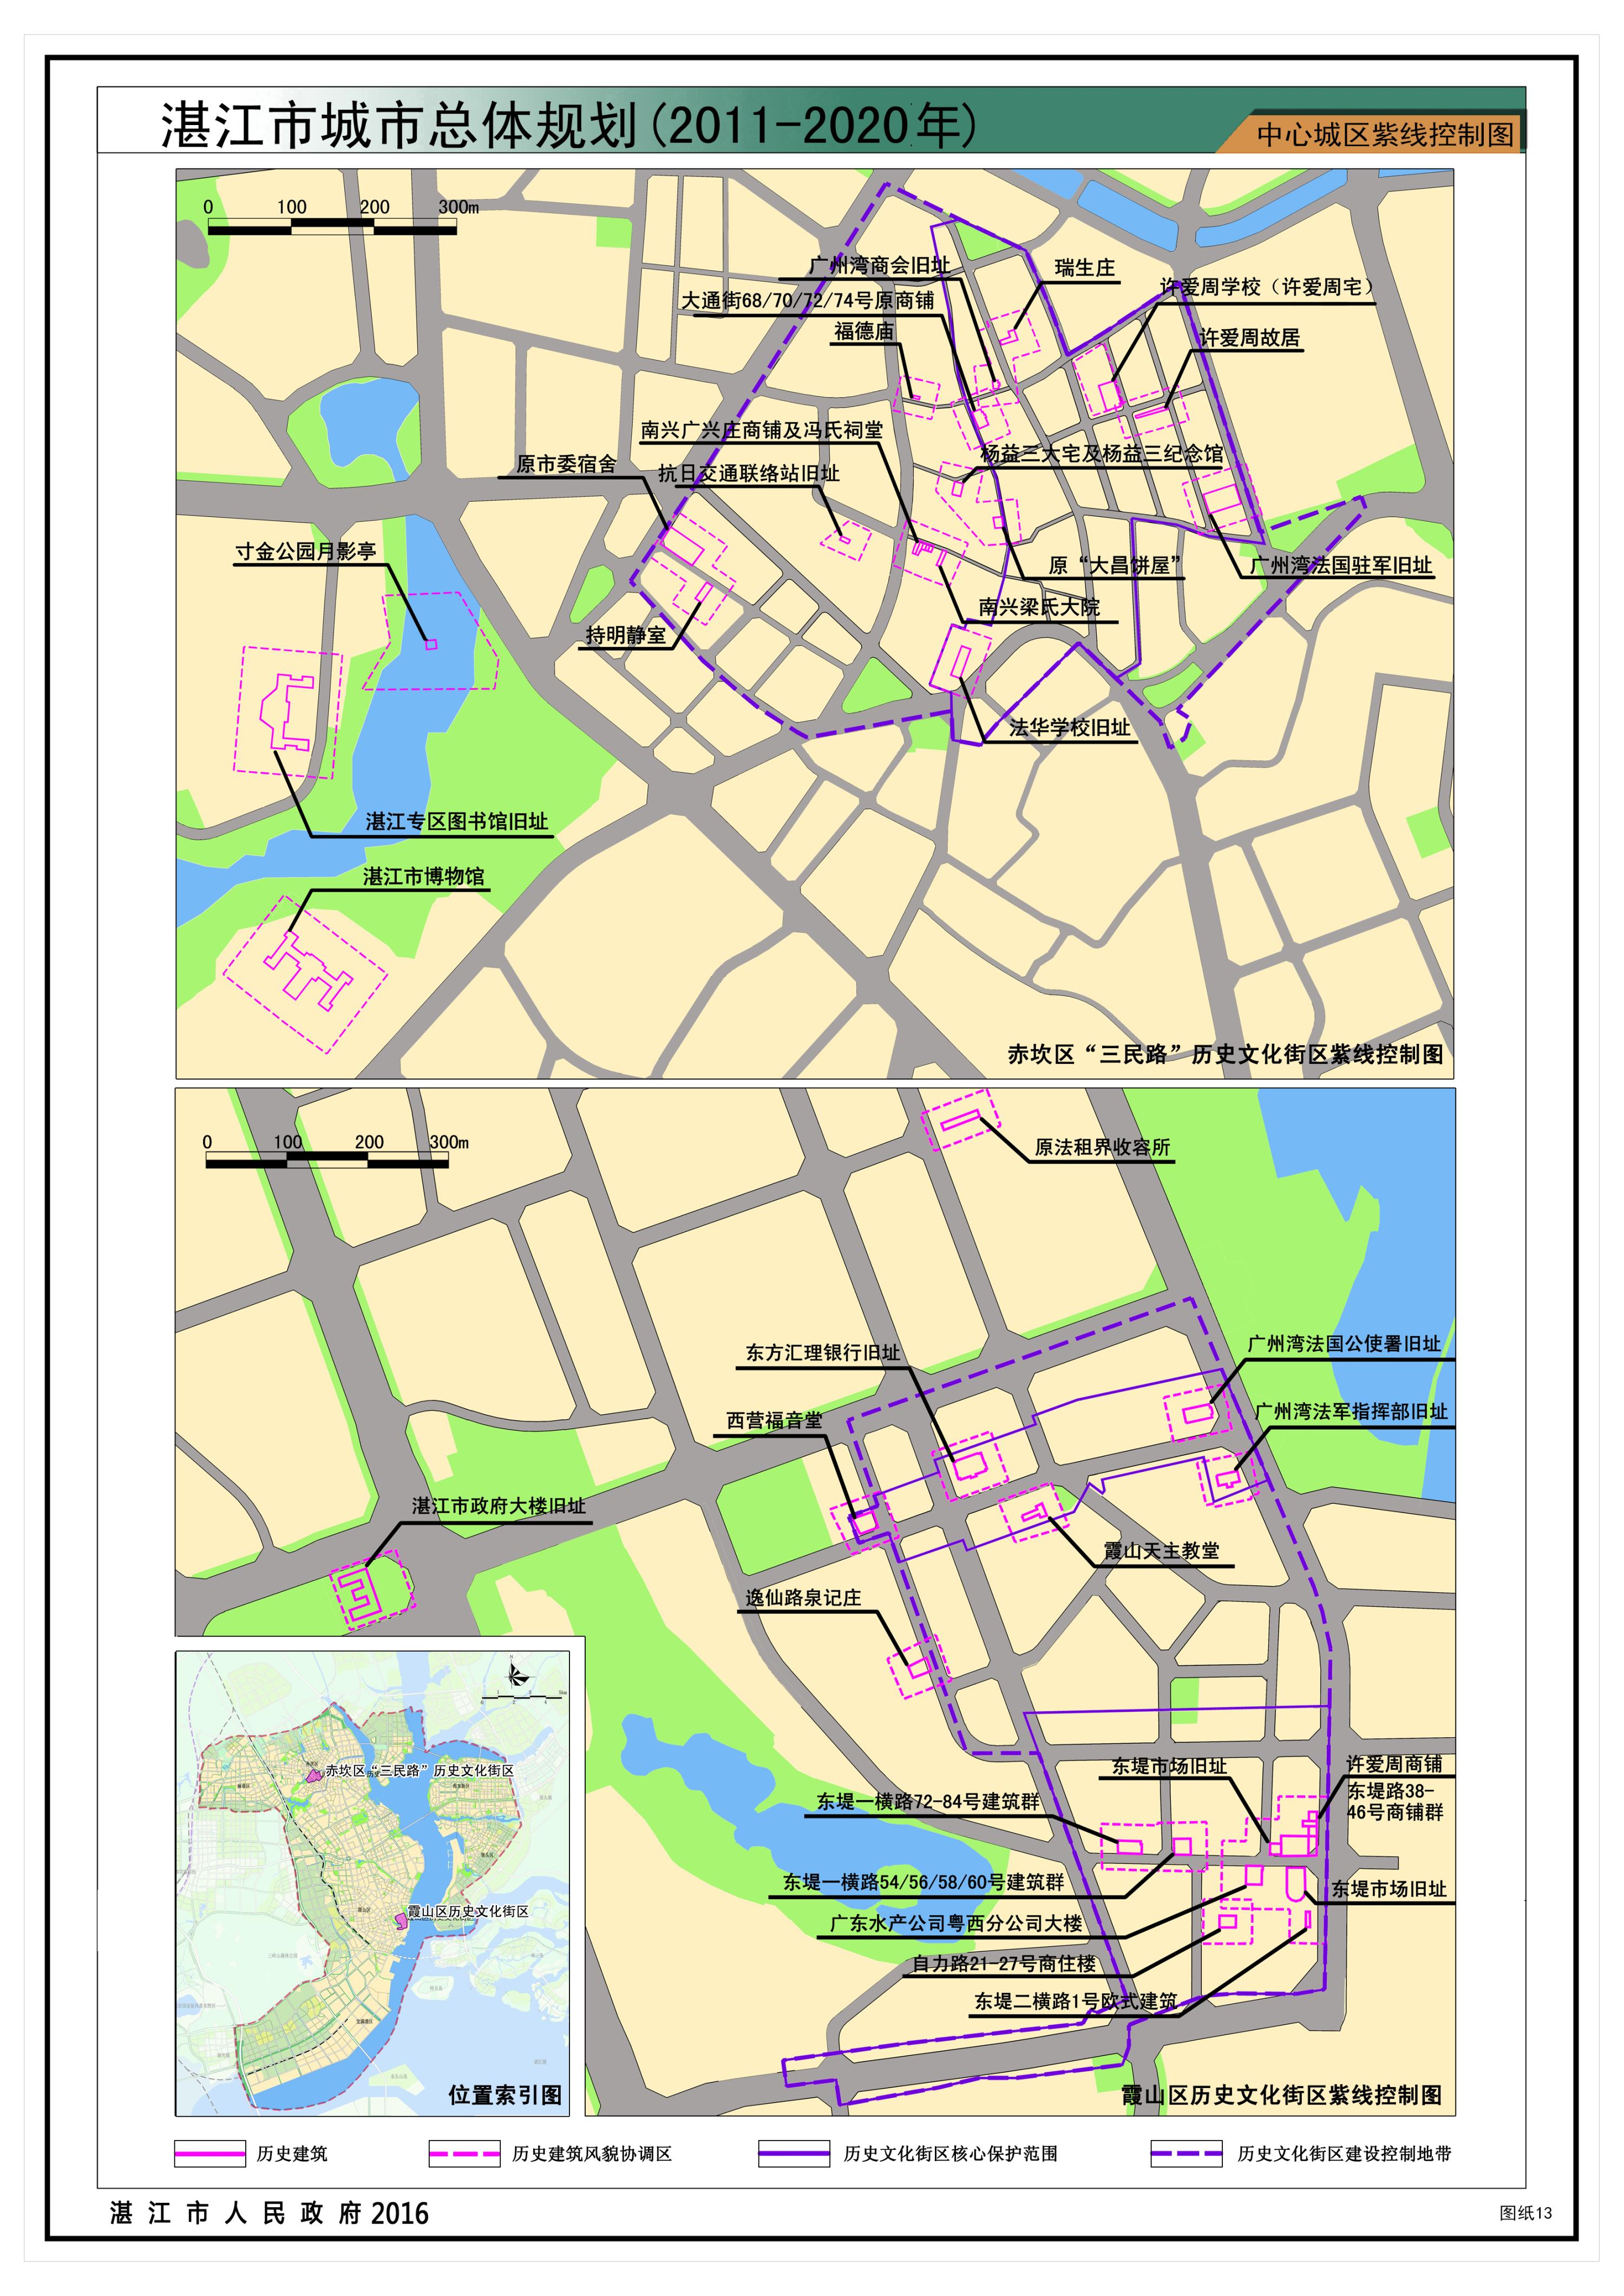 《湛江市城市总体规划(2011-2020年)》批后公告